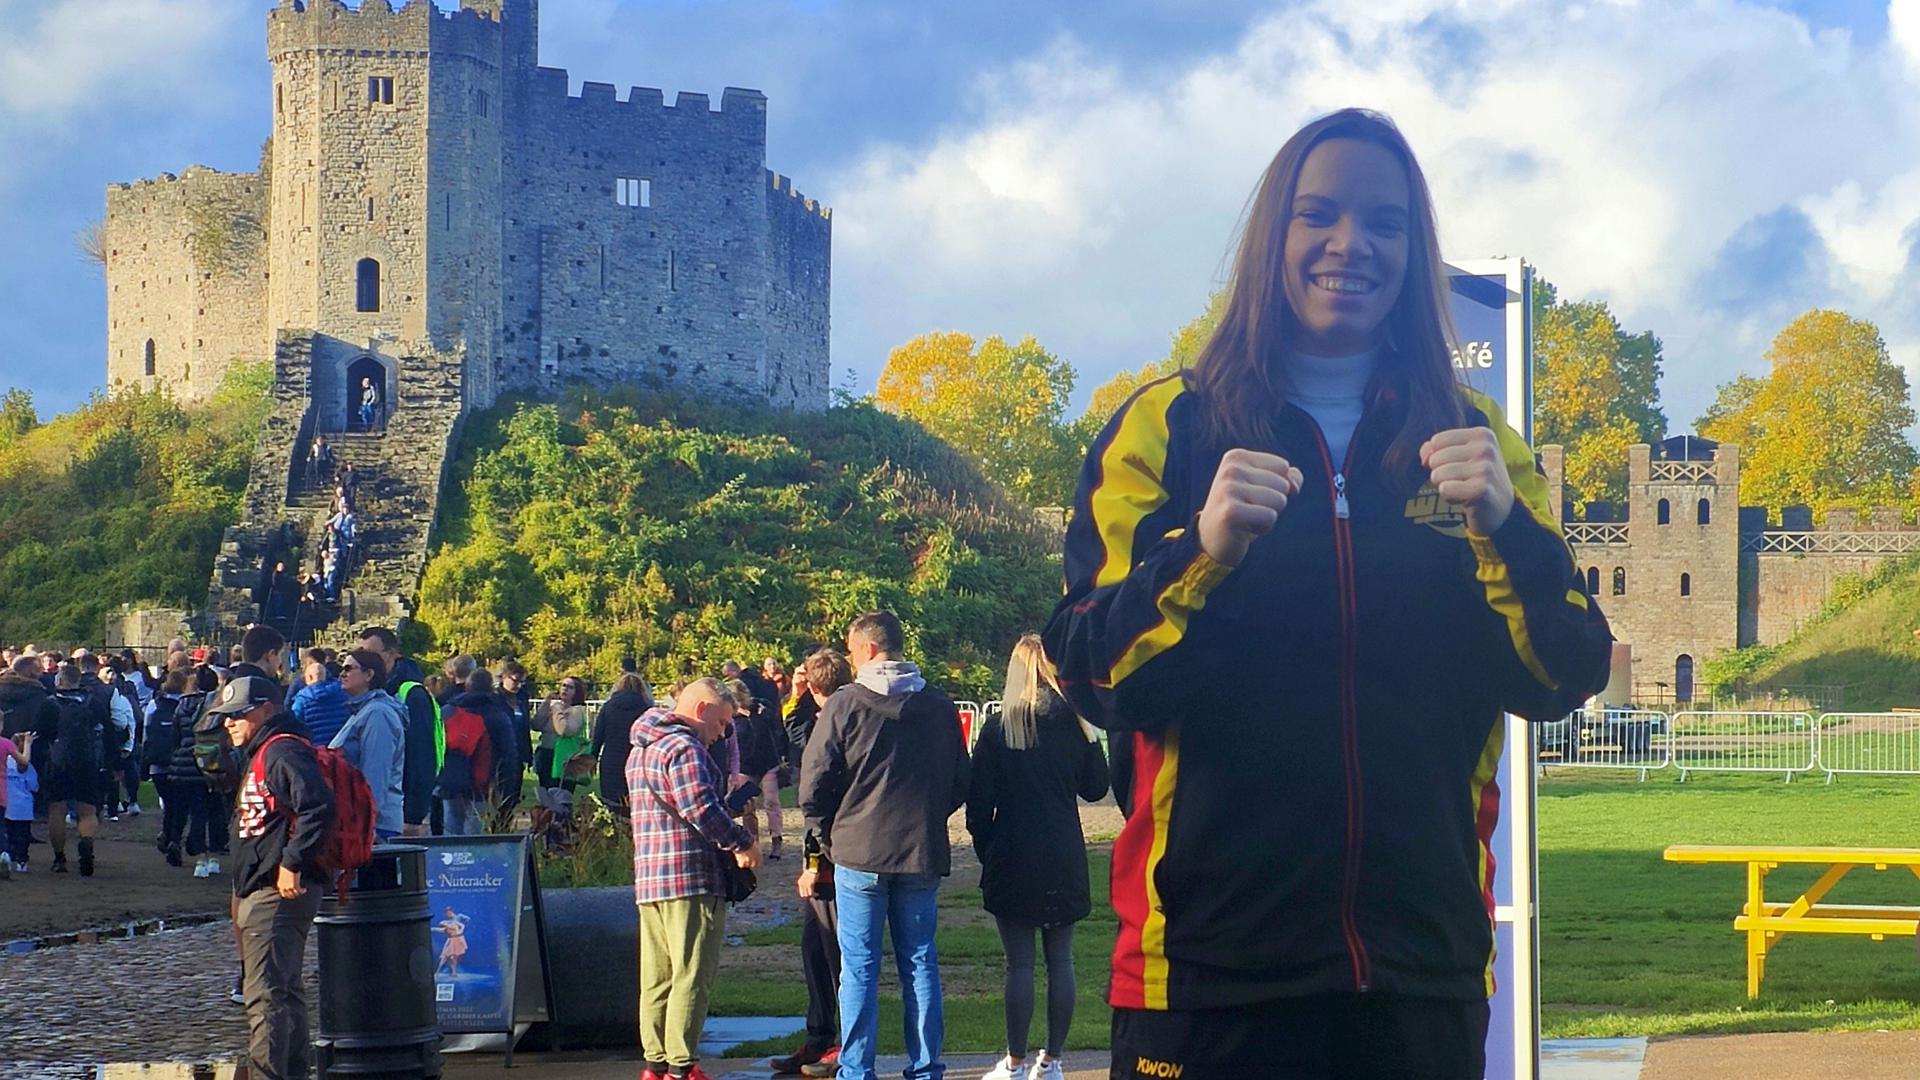 Erfolgreicher Ausflug nach Wales: Mit einer Gold- und einer Bronzemedaille kam Jenny Dahlström von der Kickbox-Weltmeisterschaft zurück nach Lauf.